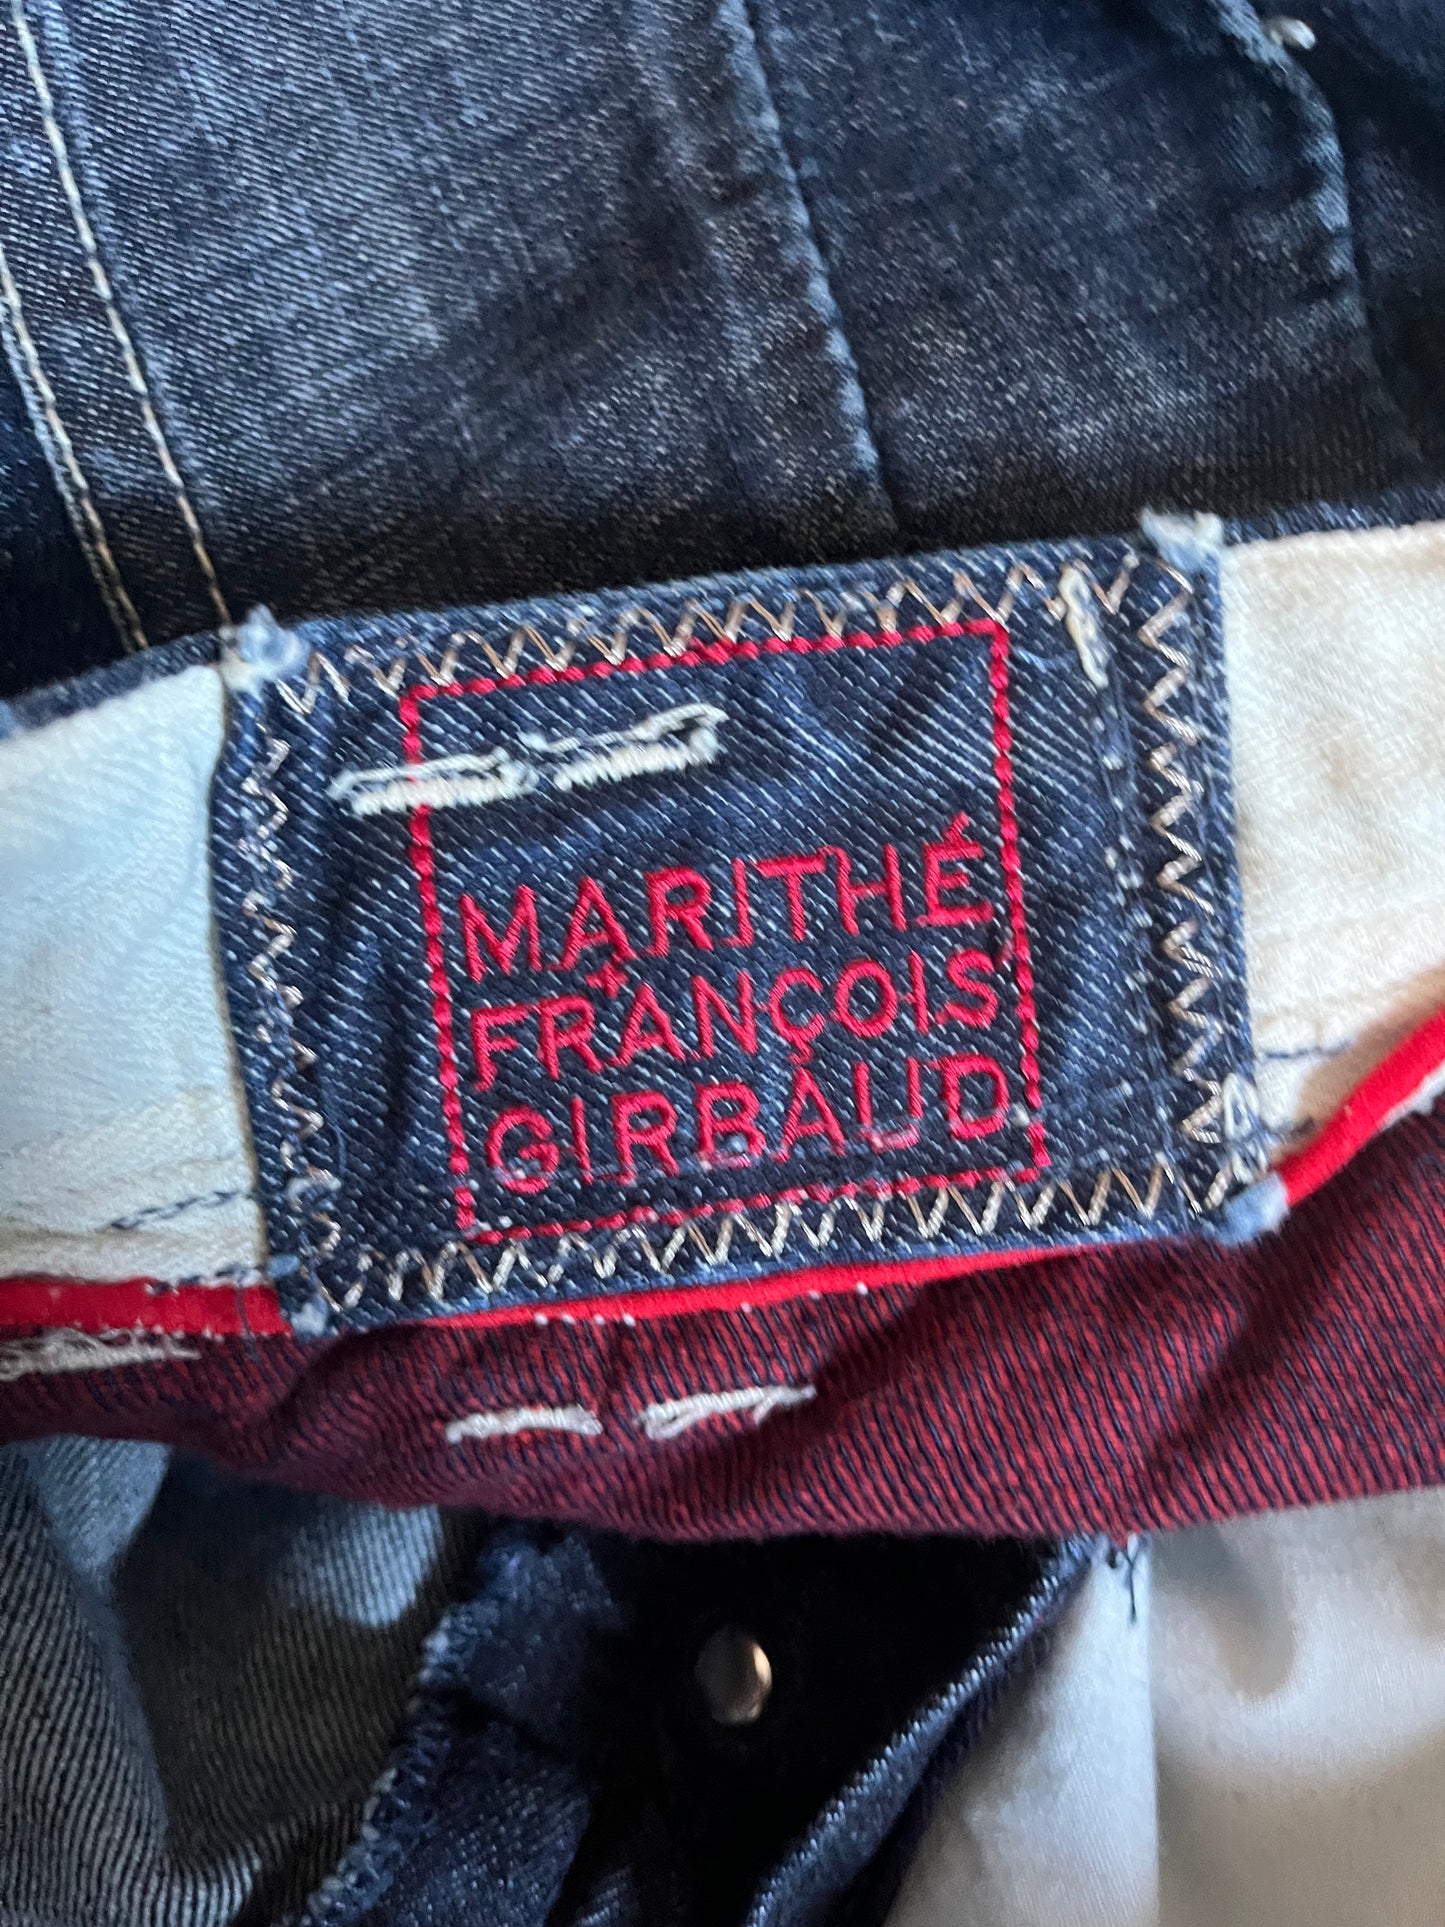 00 年代 Marithe François Girbaud Enigma 牛仔裤 (S)